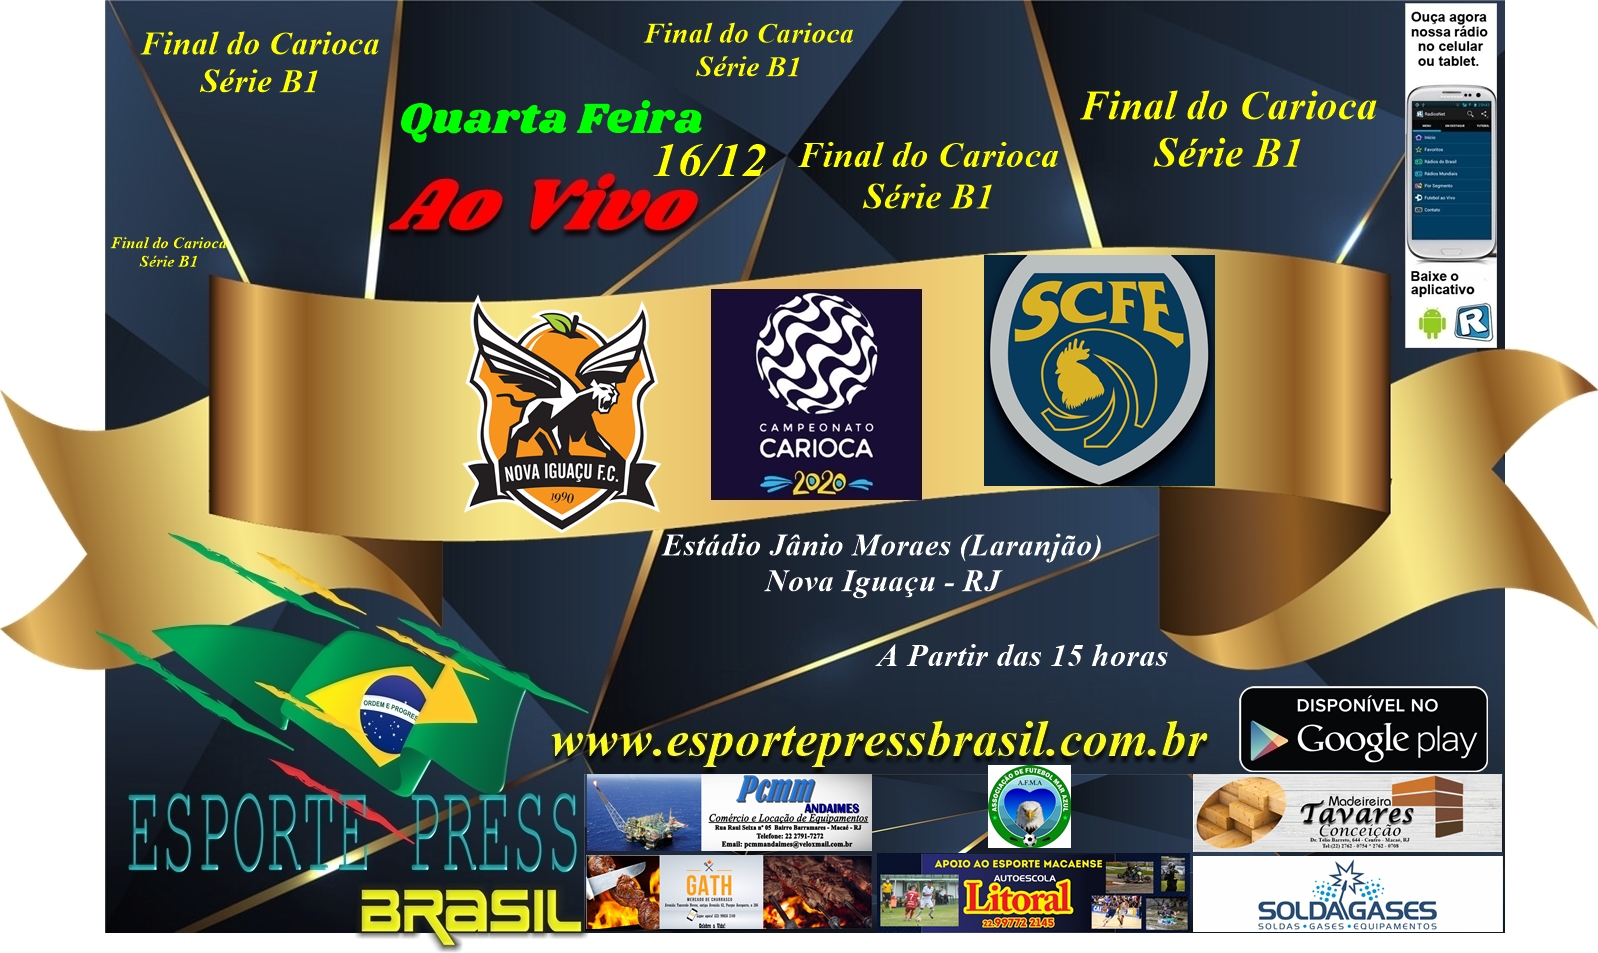 Onde vai ser a final do Carioca 2022?